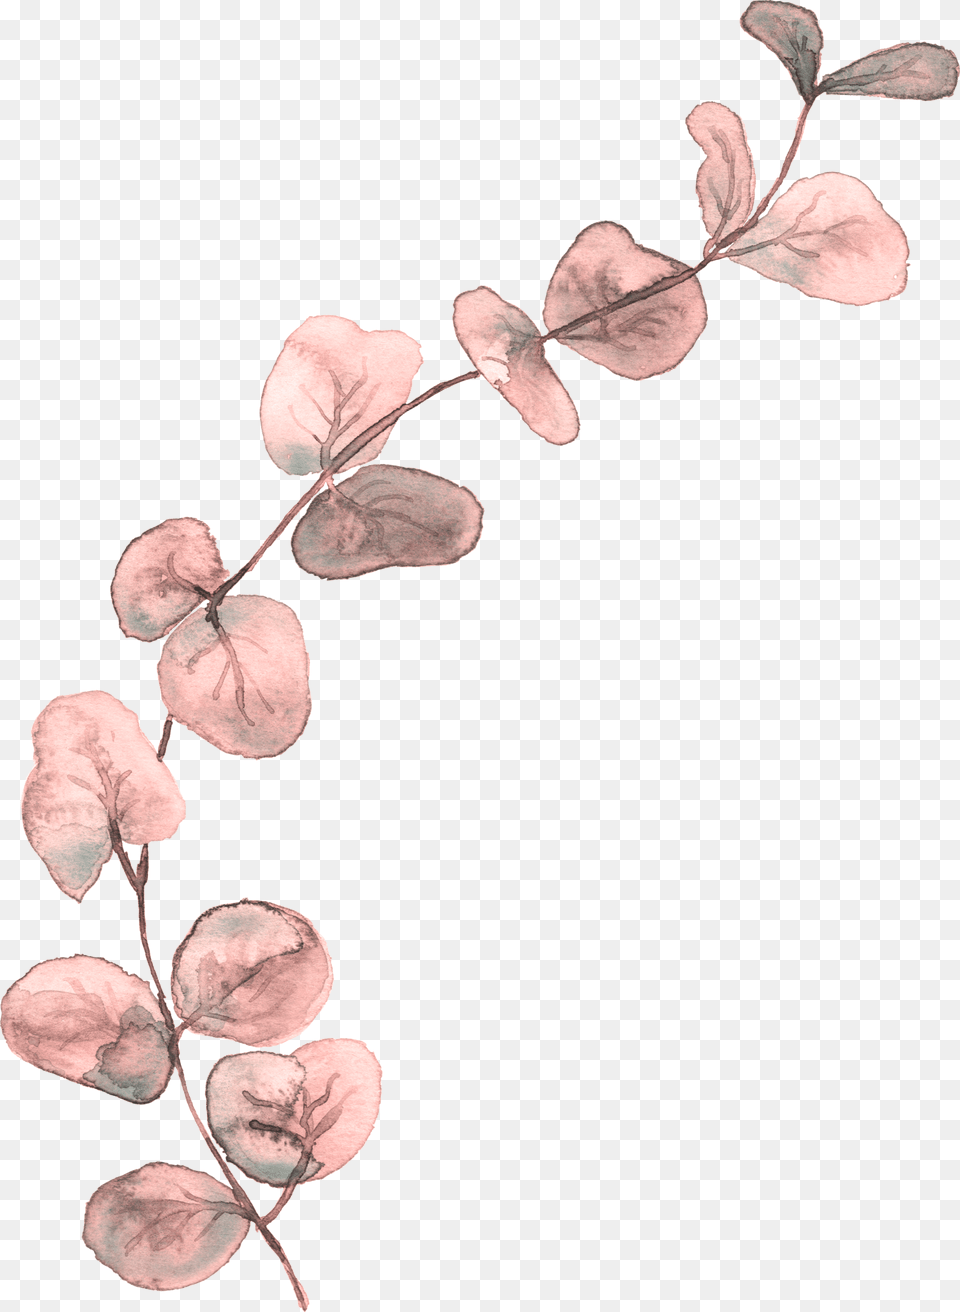 Illustration, Leaf, Plant, Flower, Petal Free Transparent Png